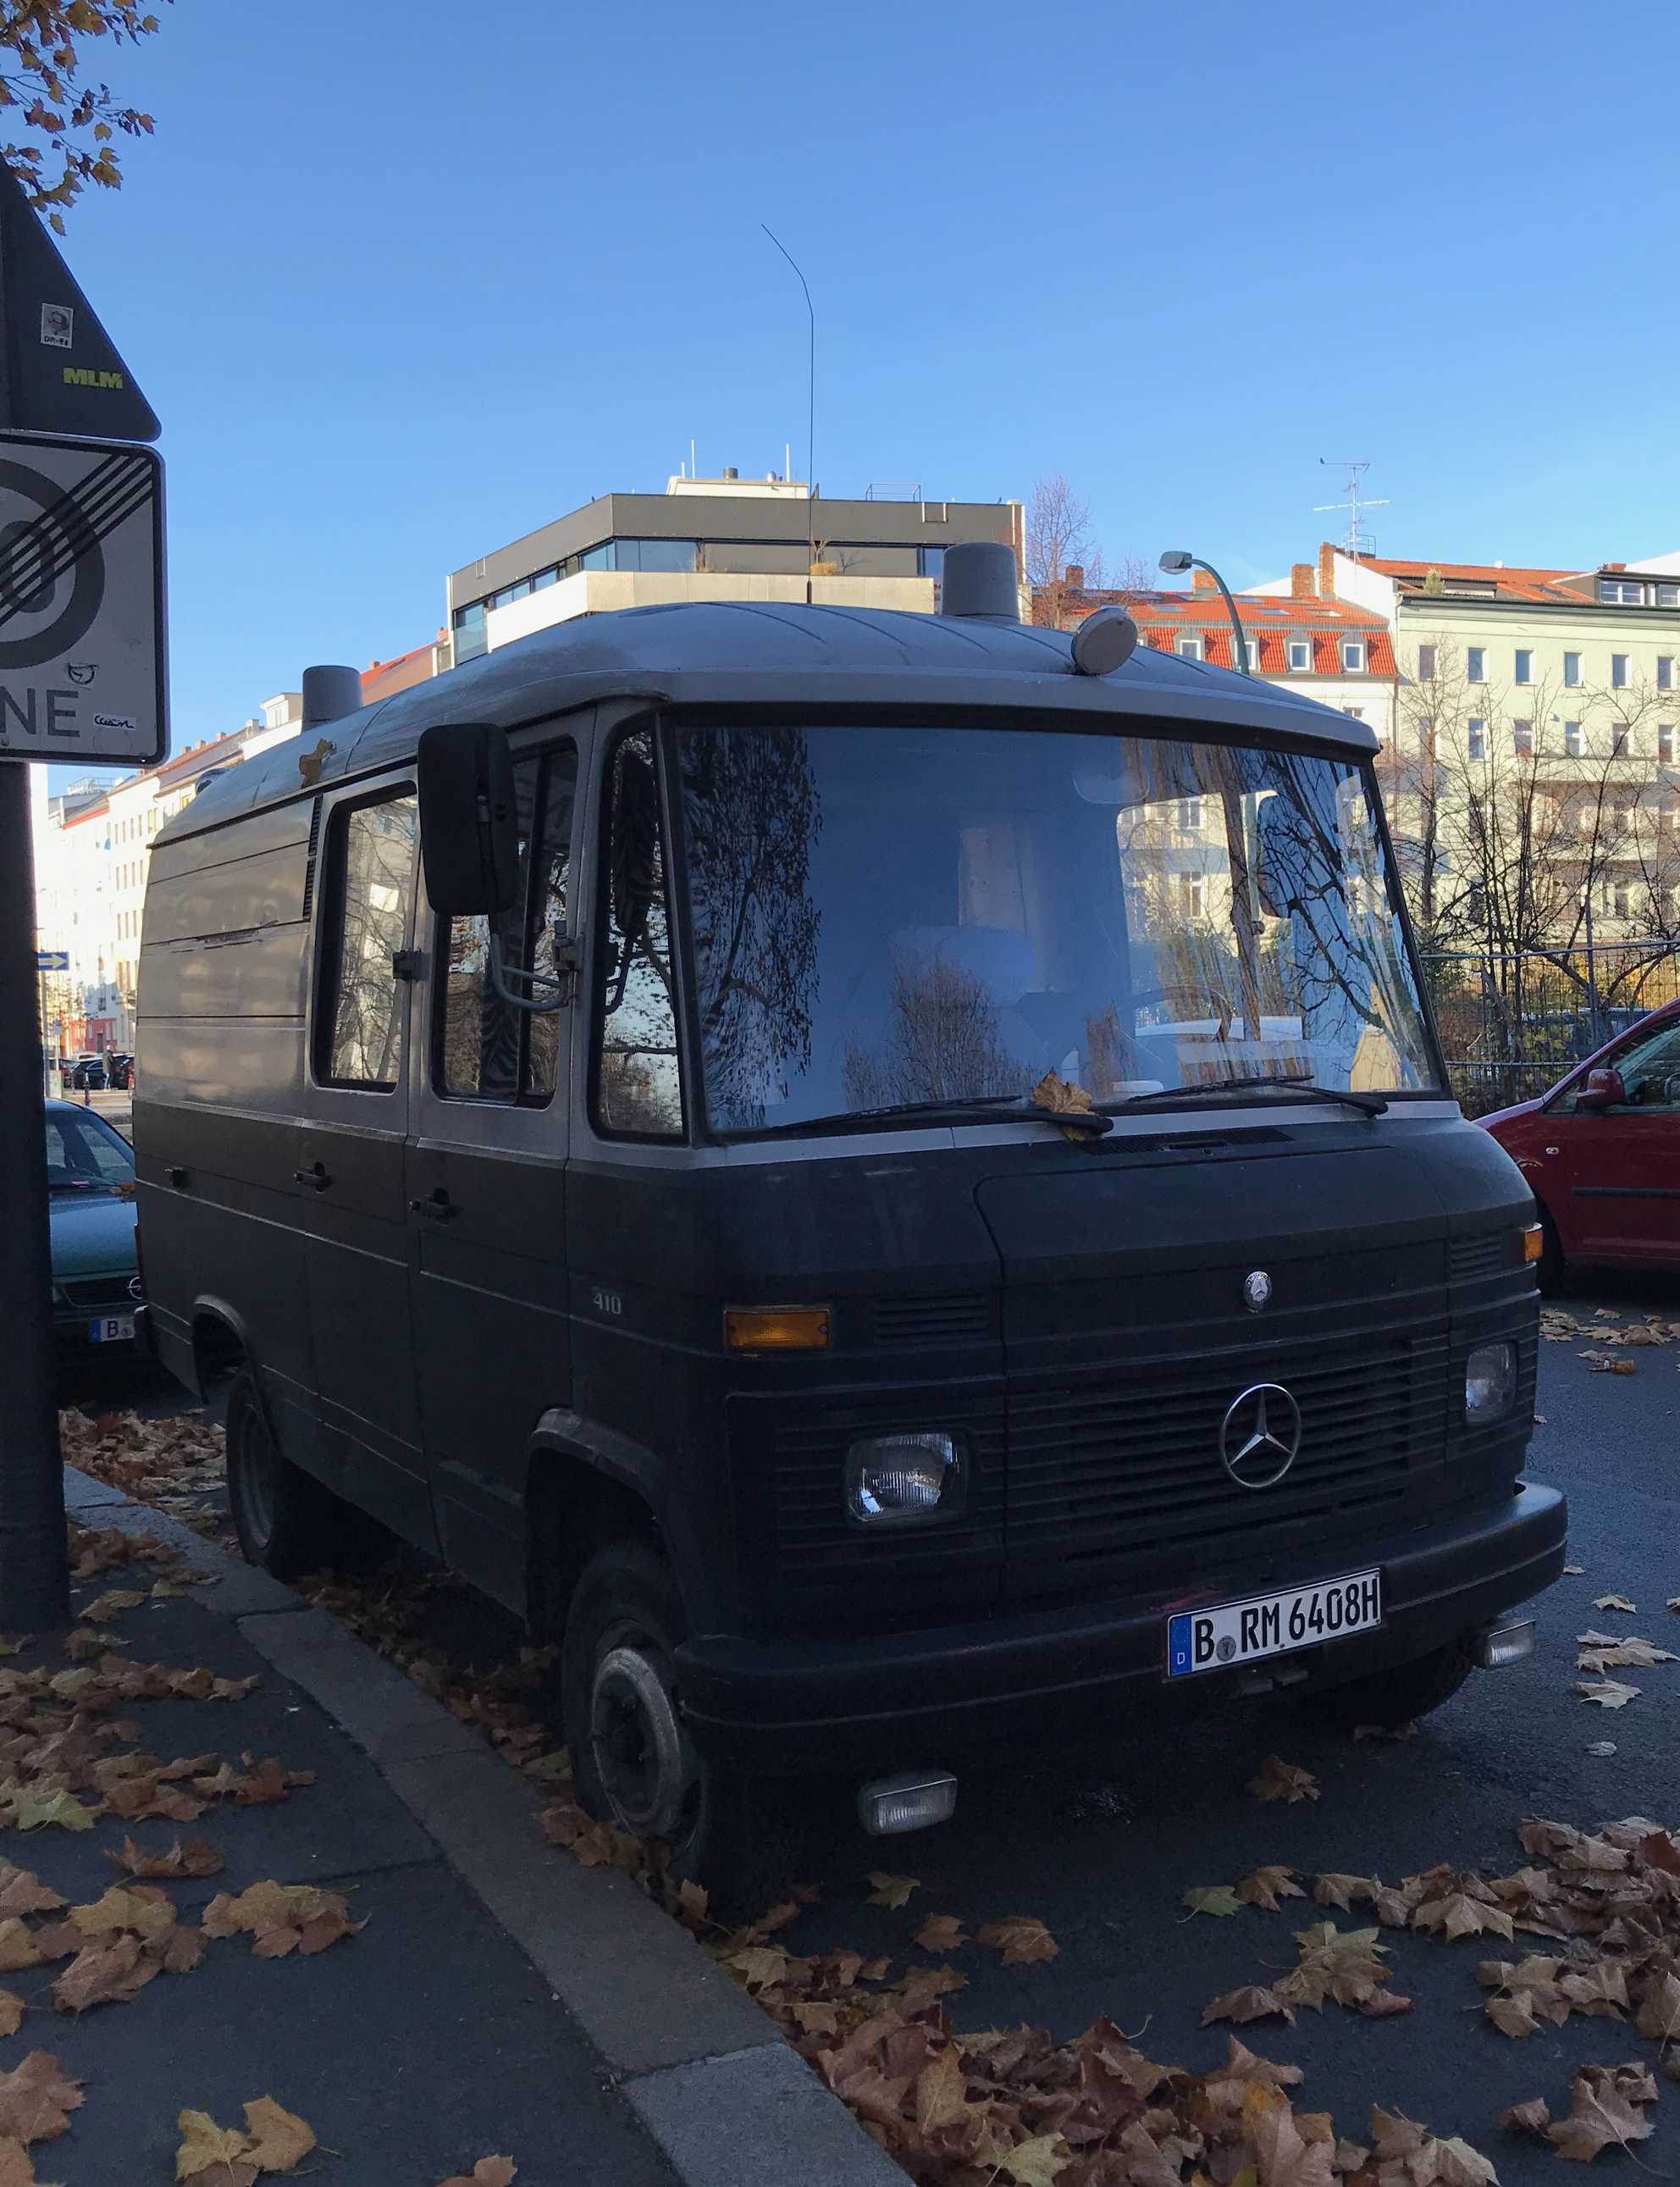 Berlin_Car2